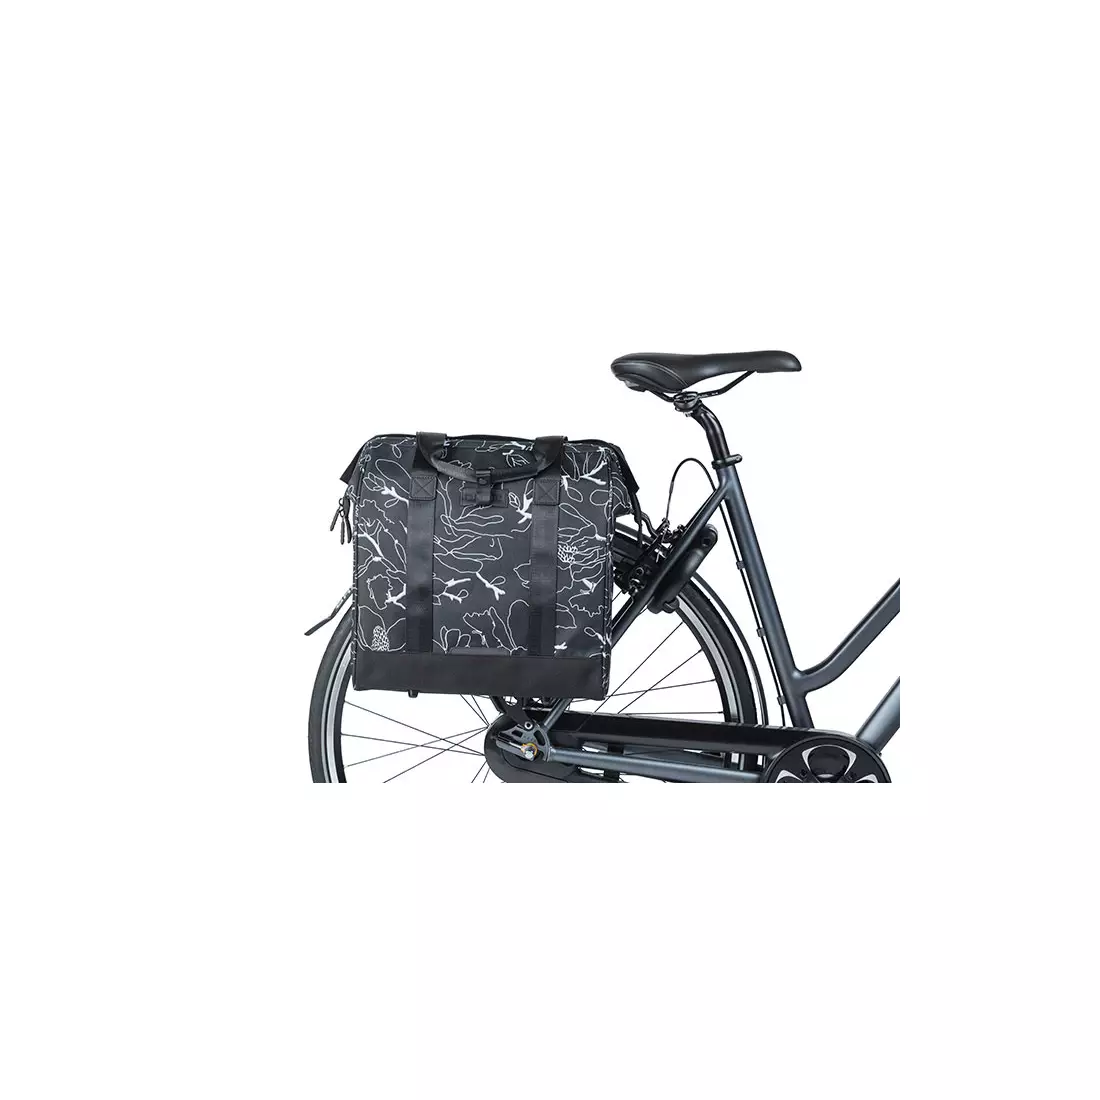 BASIL Geantă pentru bicicletă City - single CITY GRAND SHOPPER, flower black 18250